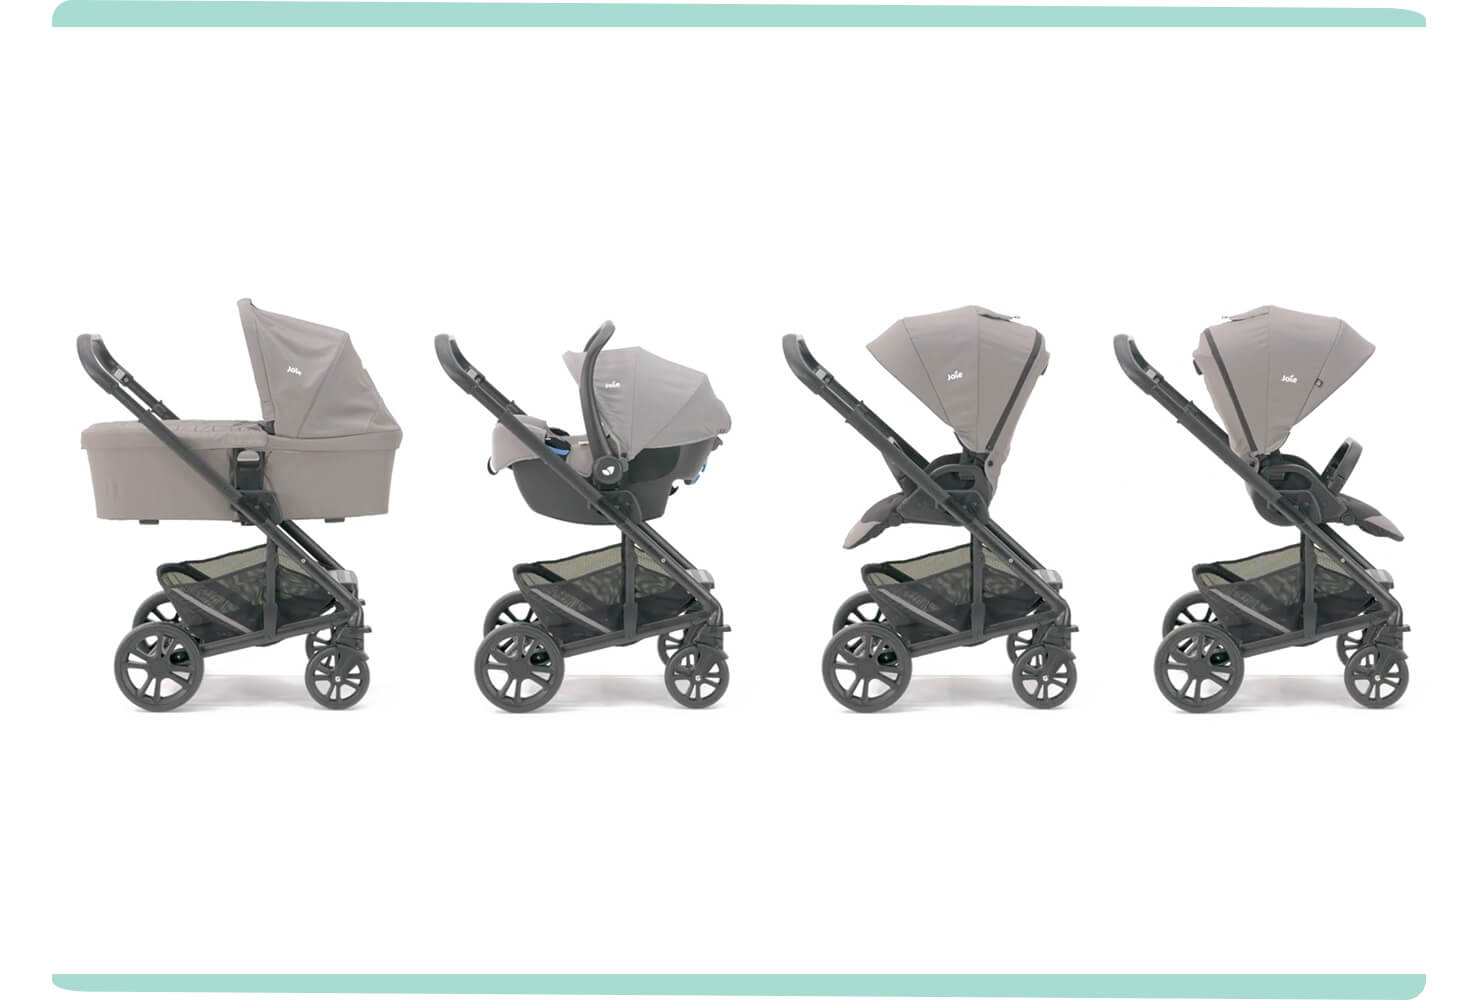 Les quatre modes d’utilisation du landau Chrome représentés en gris clair. De gauche à droite : nacelle, porte-bébé, siège de poussette face au parent, siège de poussette face au monde.